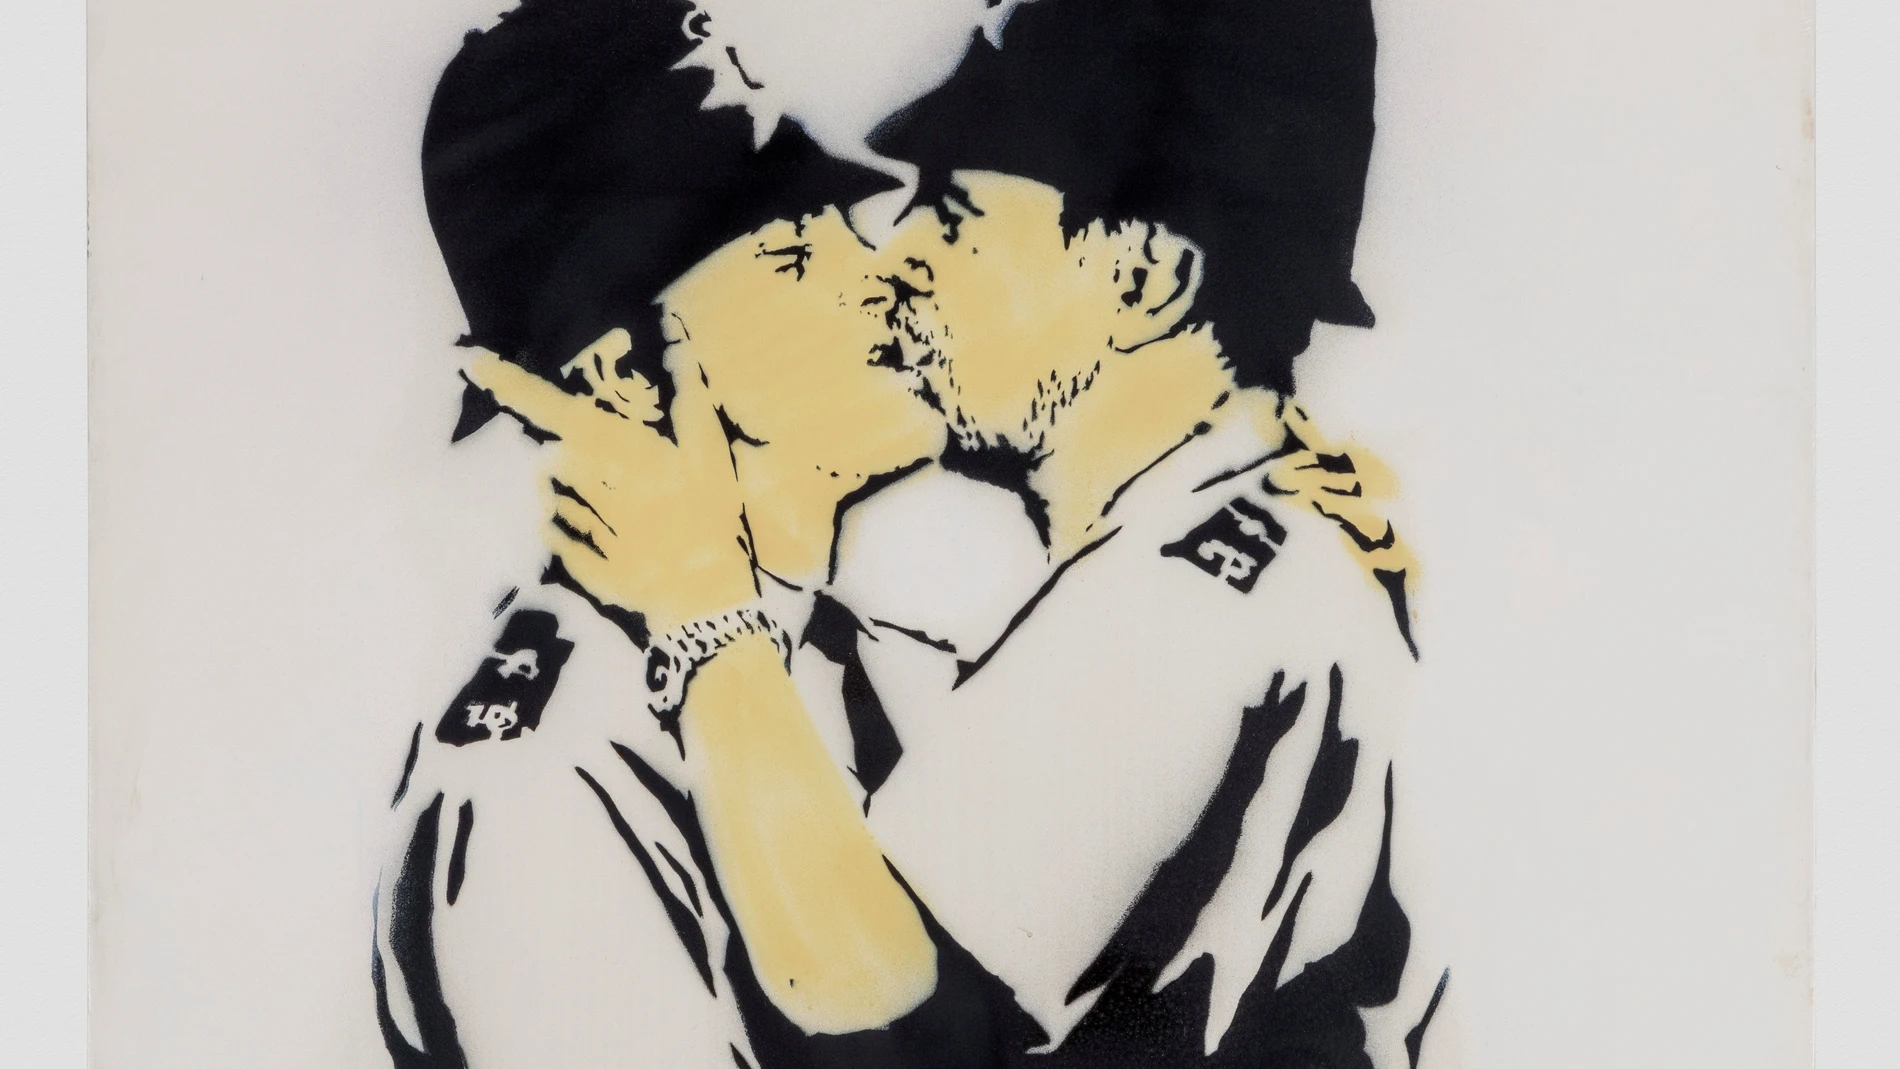 Fotografía de la obra "Kissing Coopers" del artista británico Banksy